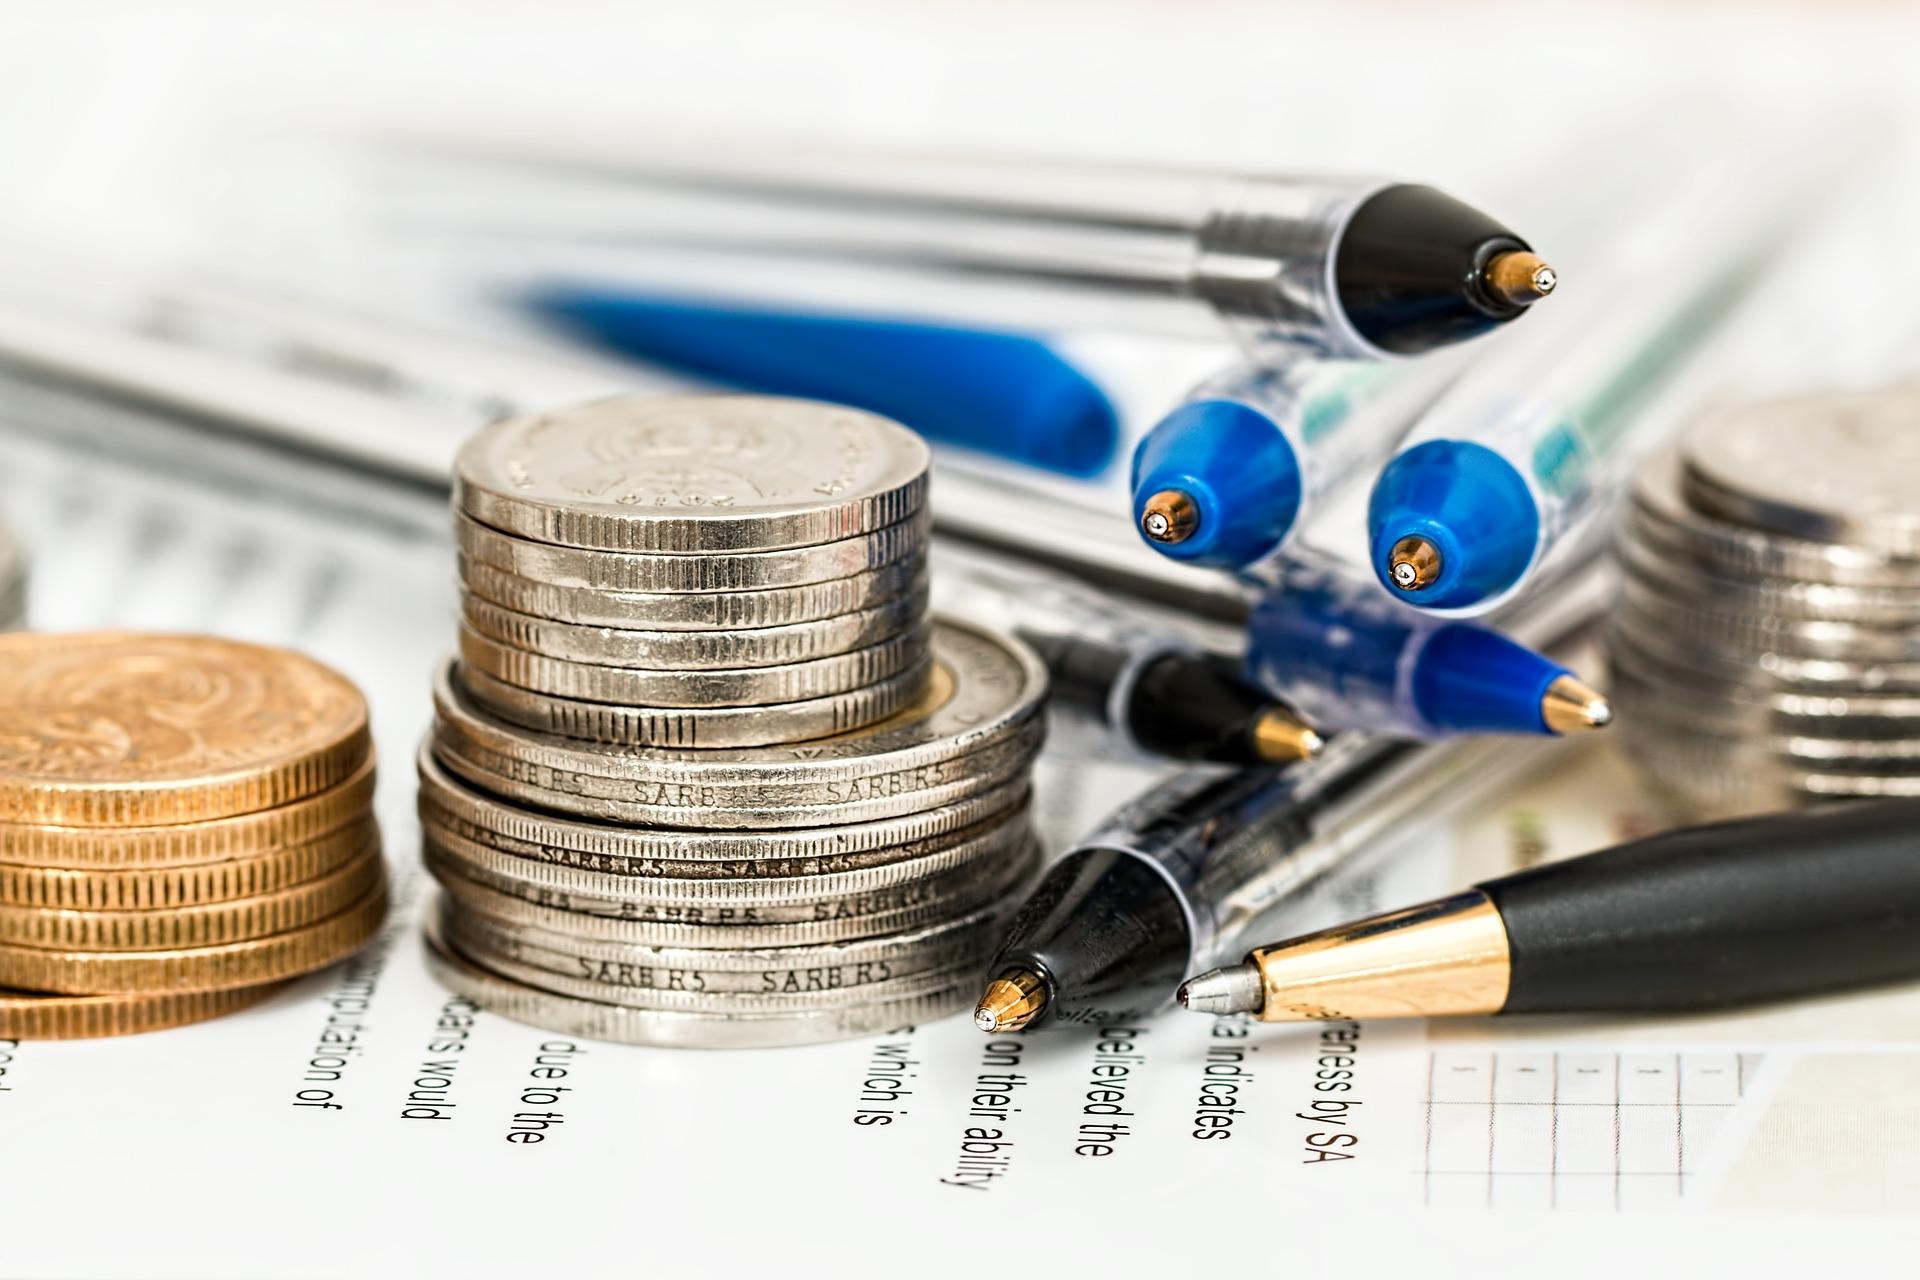 Monedas y bolígrafos. Fuente: Pixabay.